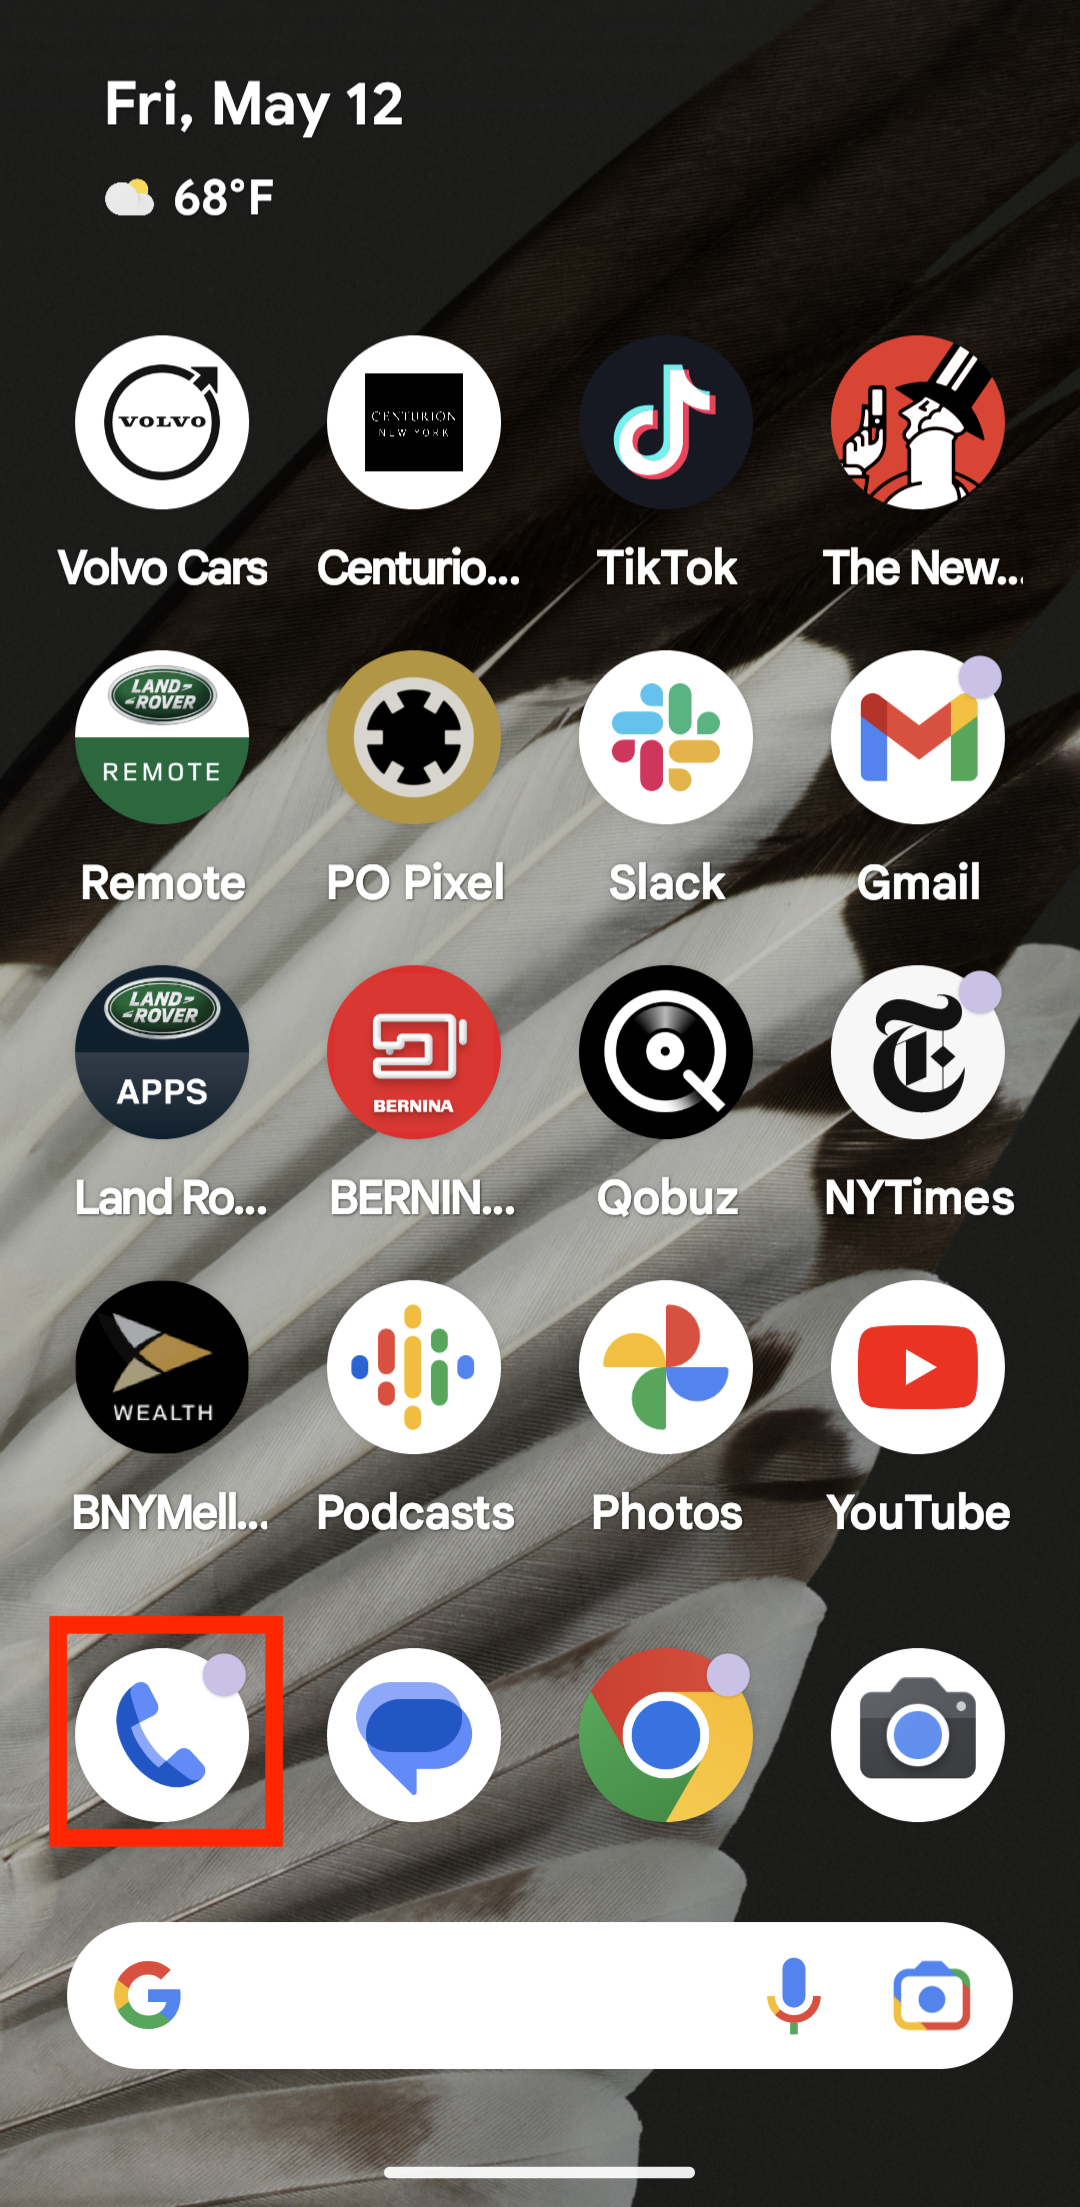 A tela inicial do Android com o aplicativo Phone by Google em destaque.